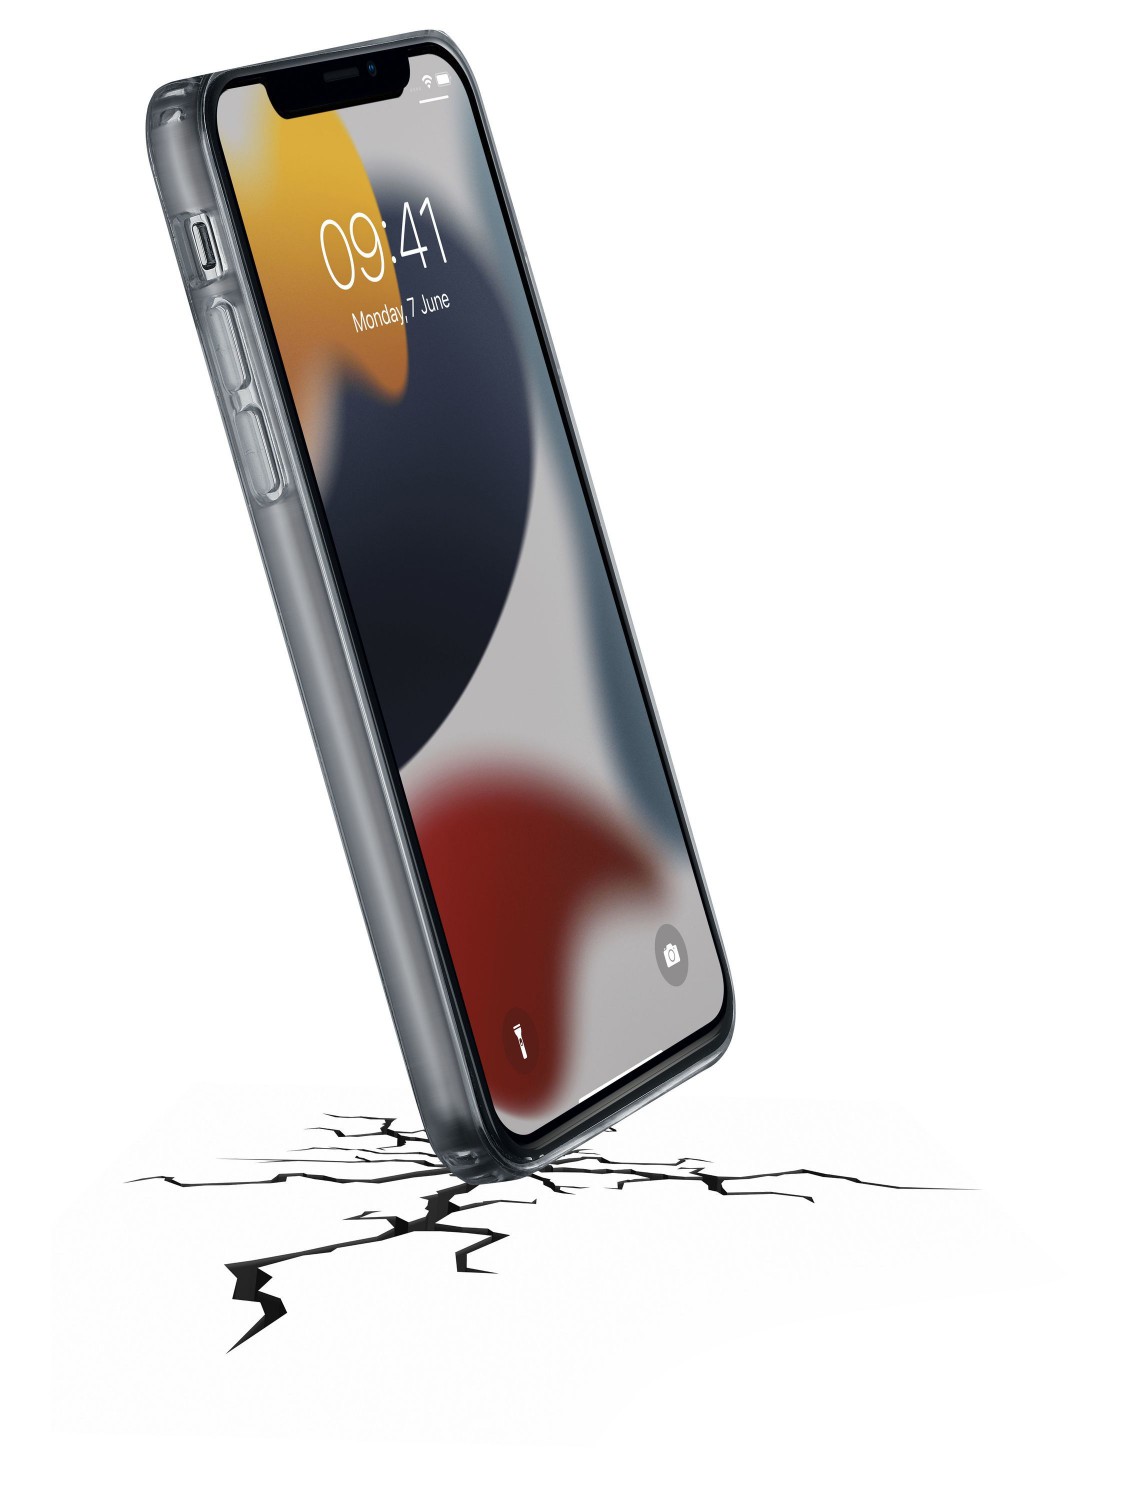 Zadní kryt Cellularline Clear Duo pro Apple iPhone 13, transparentní